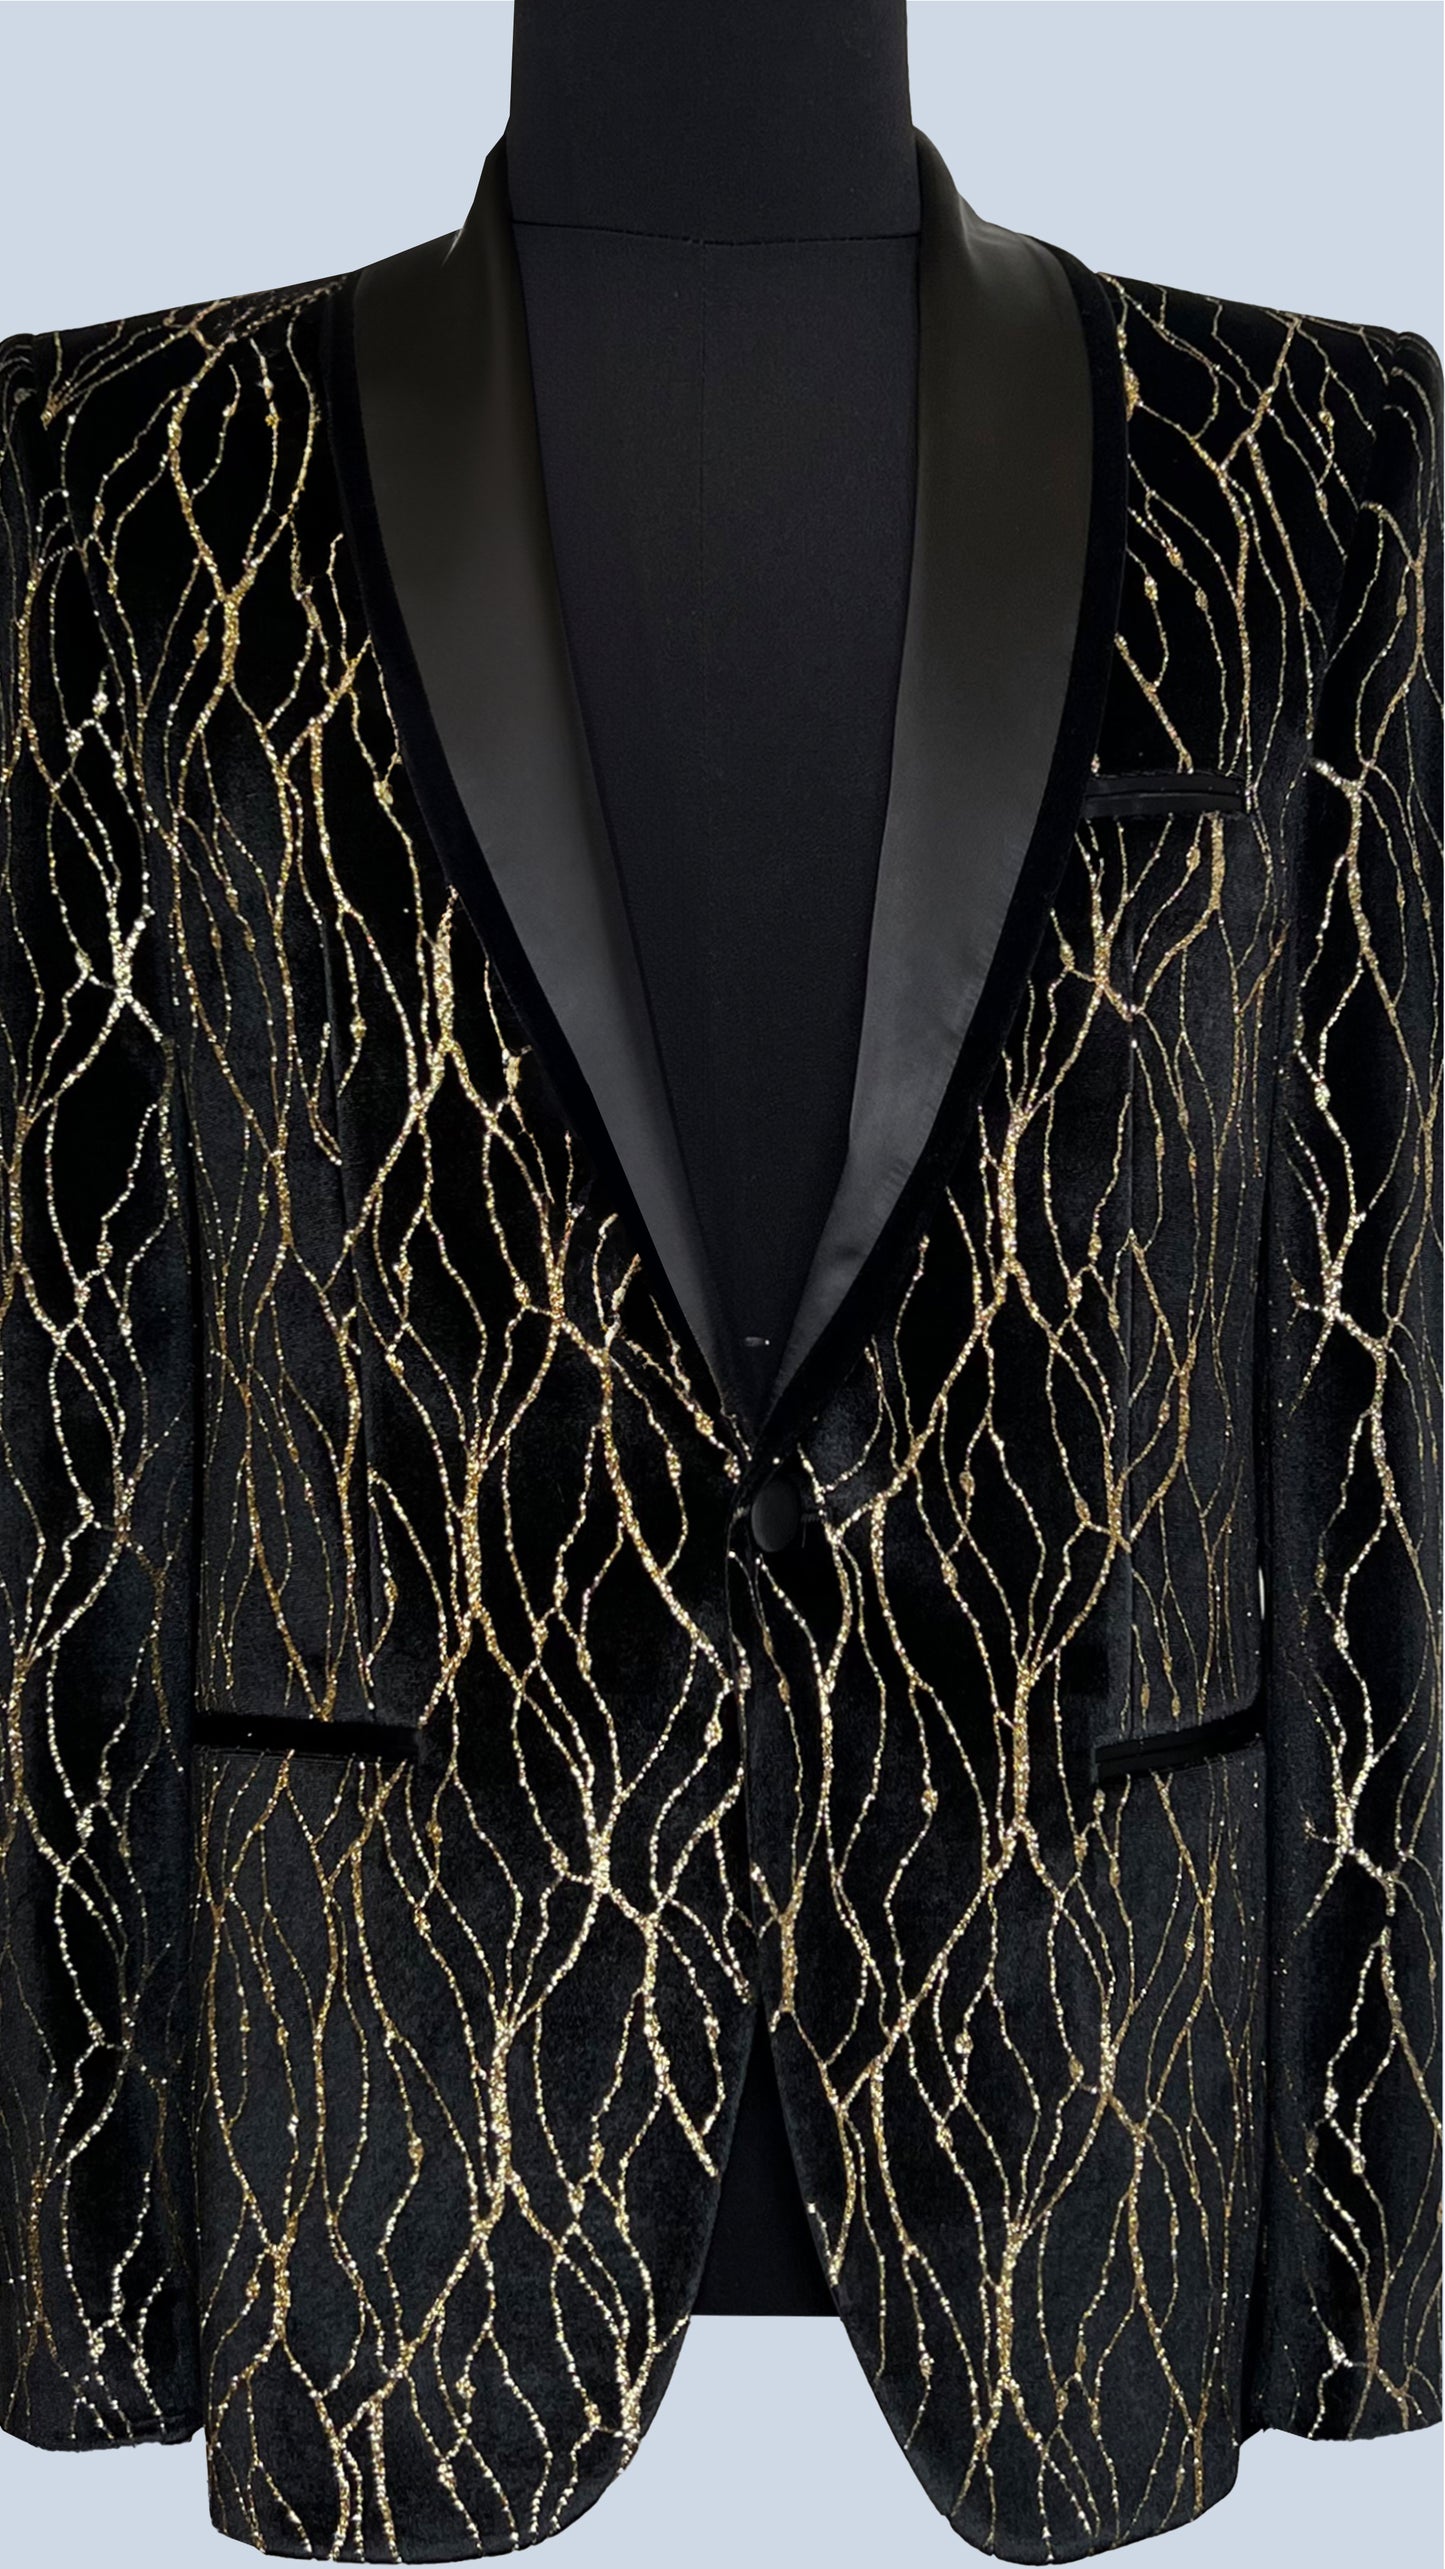 Luxurious Men's Tuxedo Blazer by Vercini